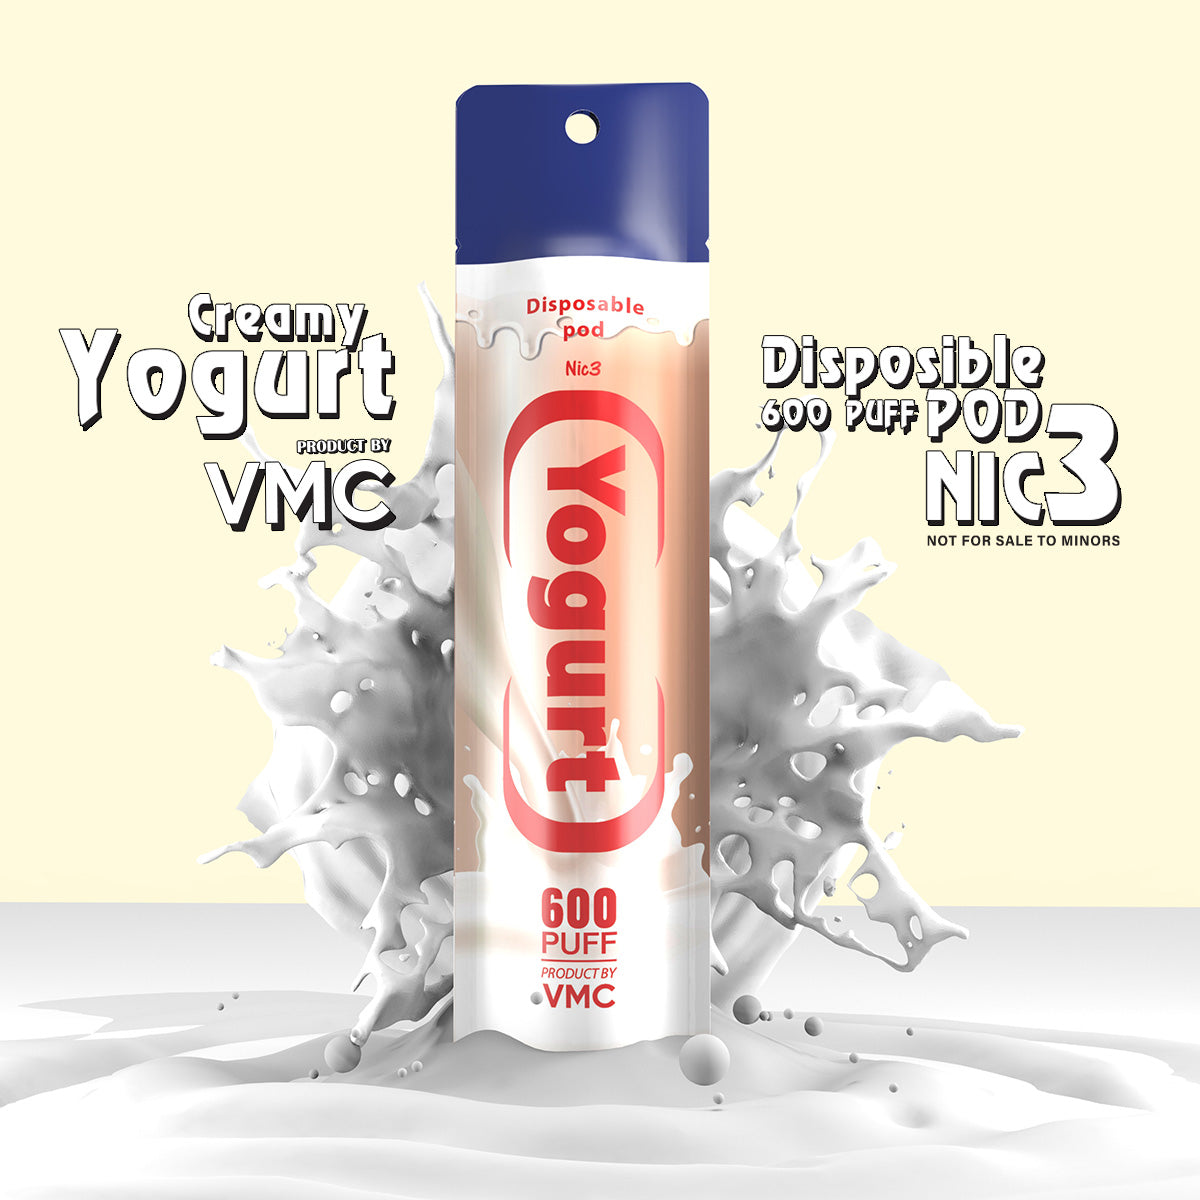 VMC - Yogurt